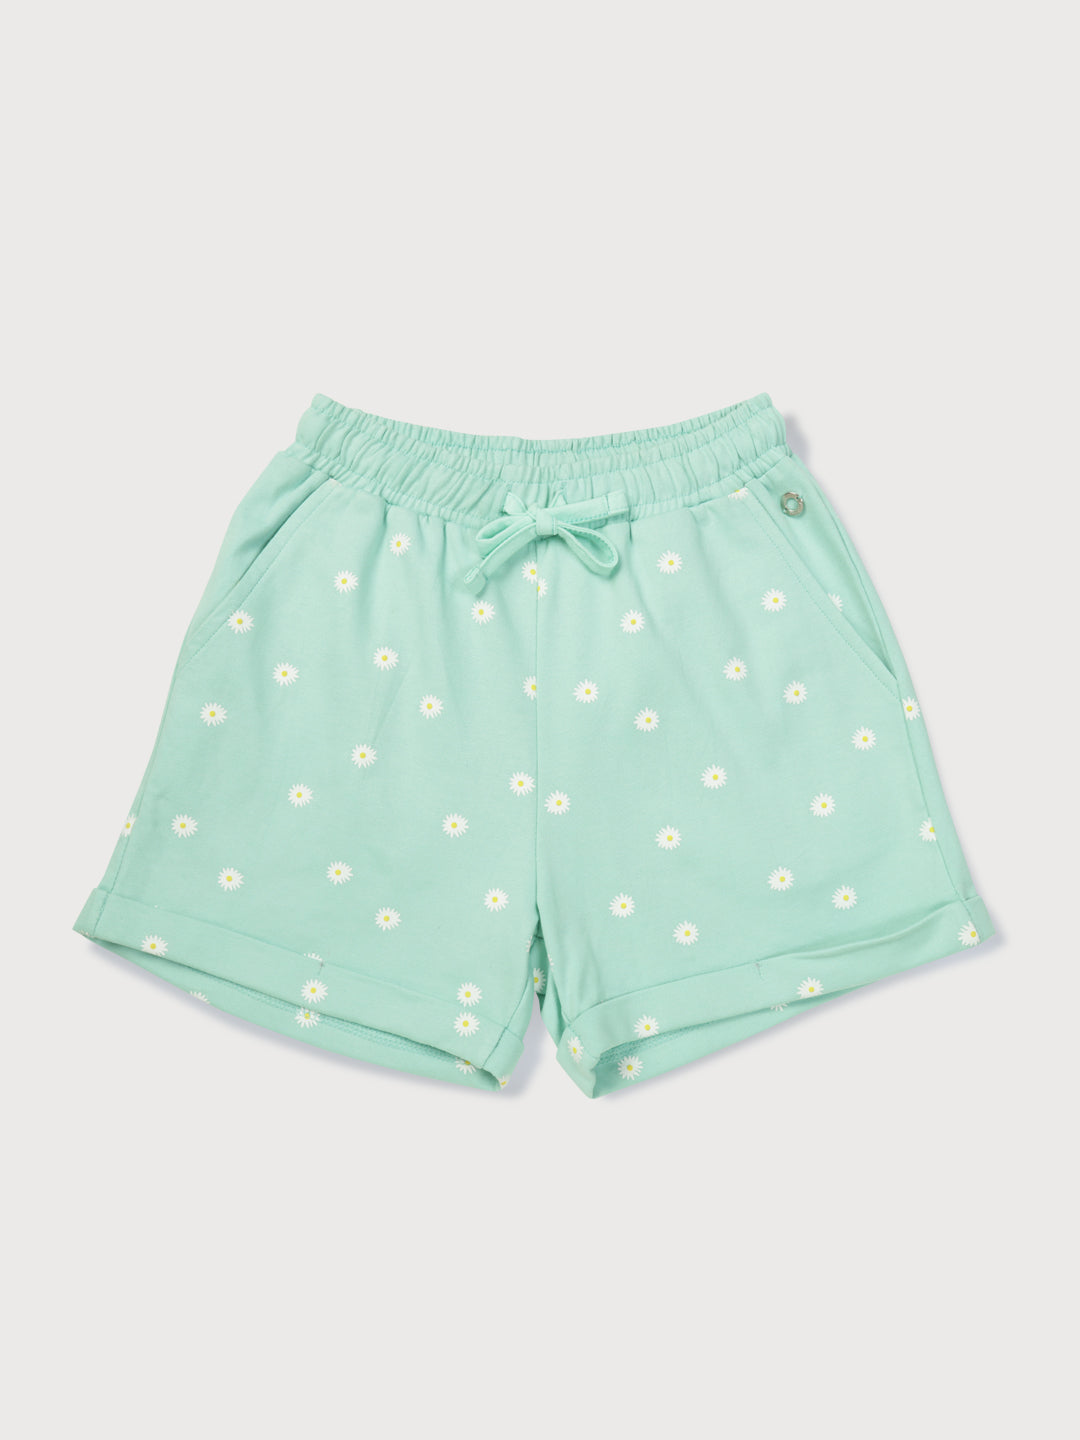 Girls Green Printed Knits Shorts